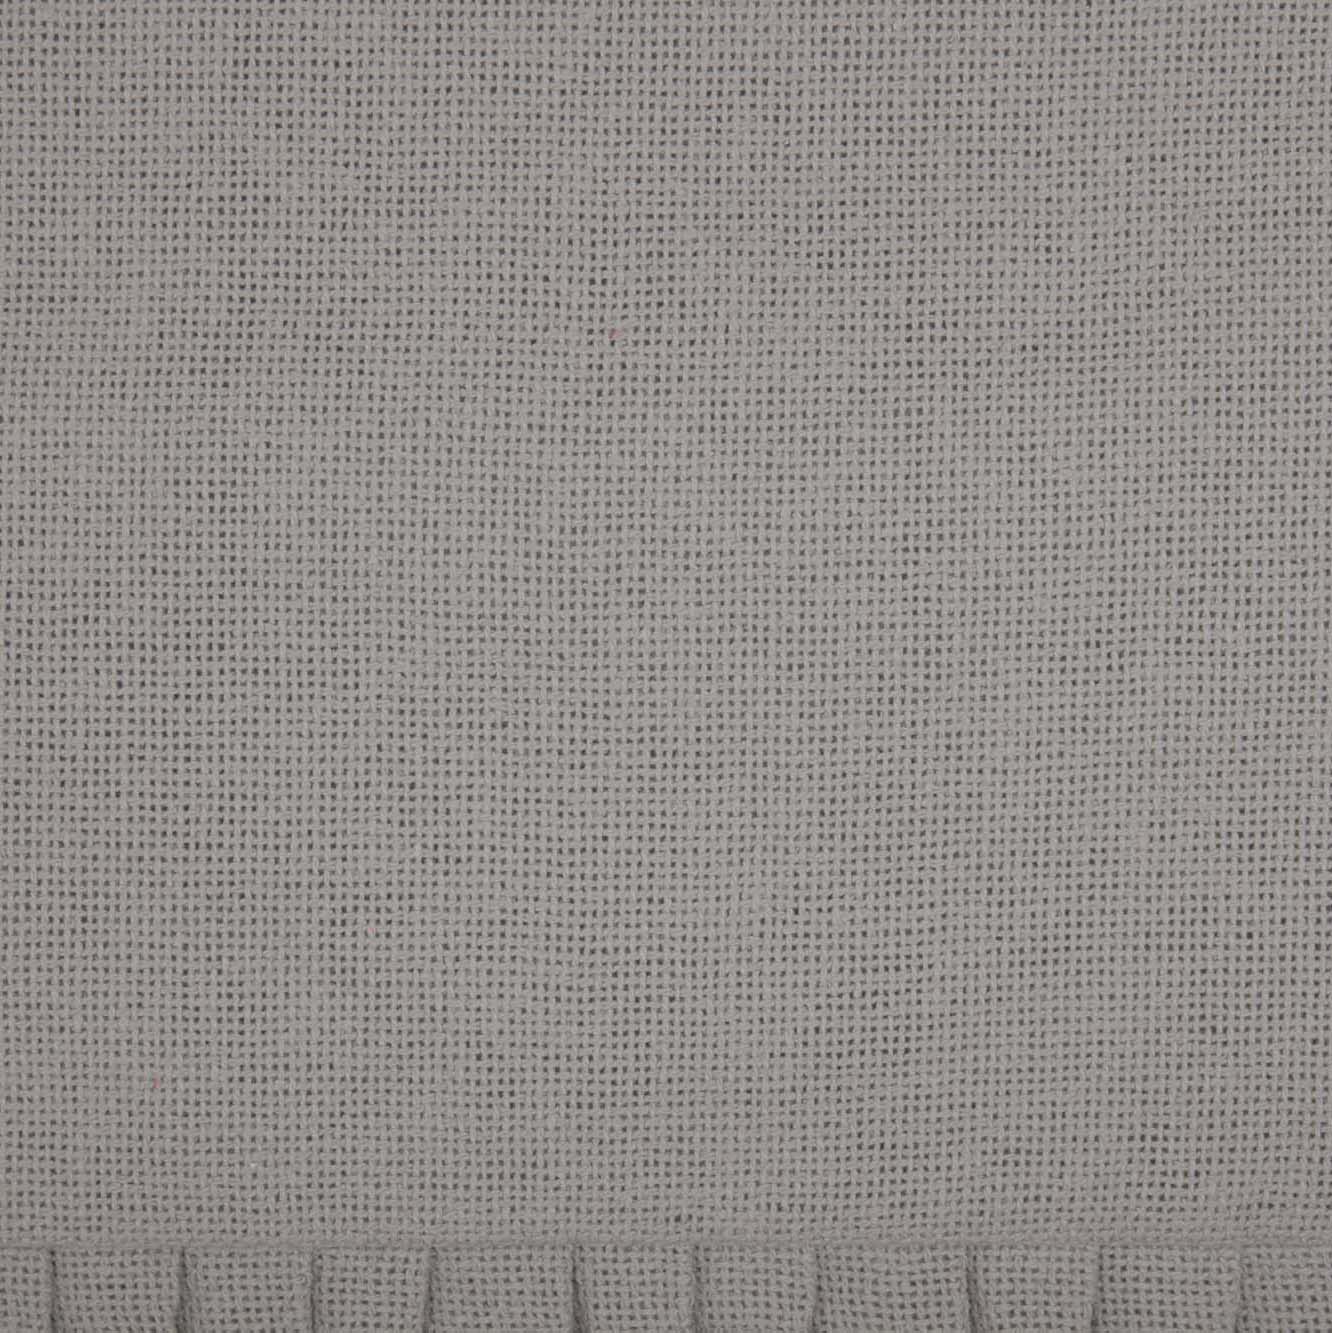 Burlap Dove Grey Fabric Euro Sham w/ Fringed Ruffle 26x26